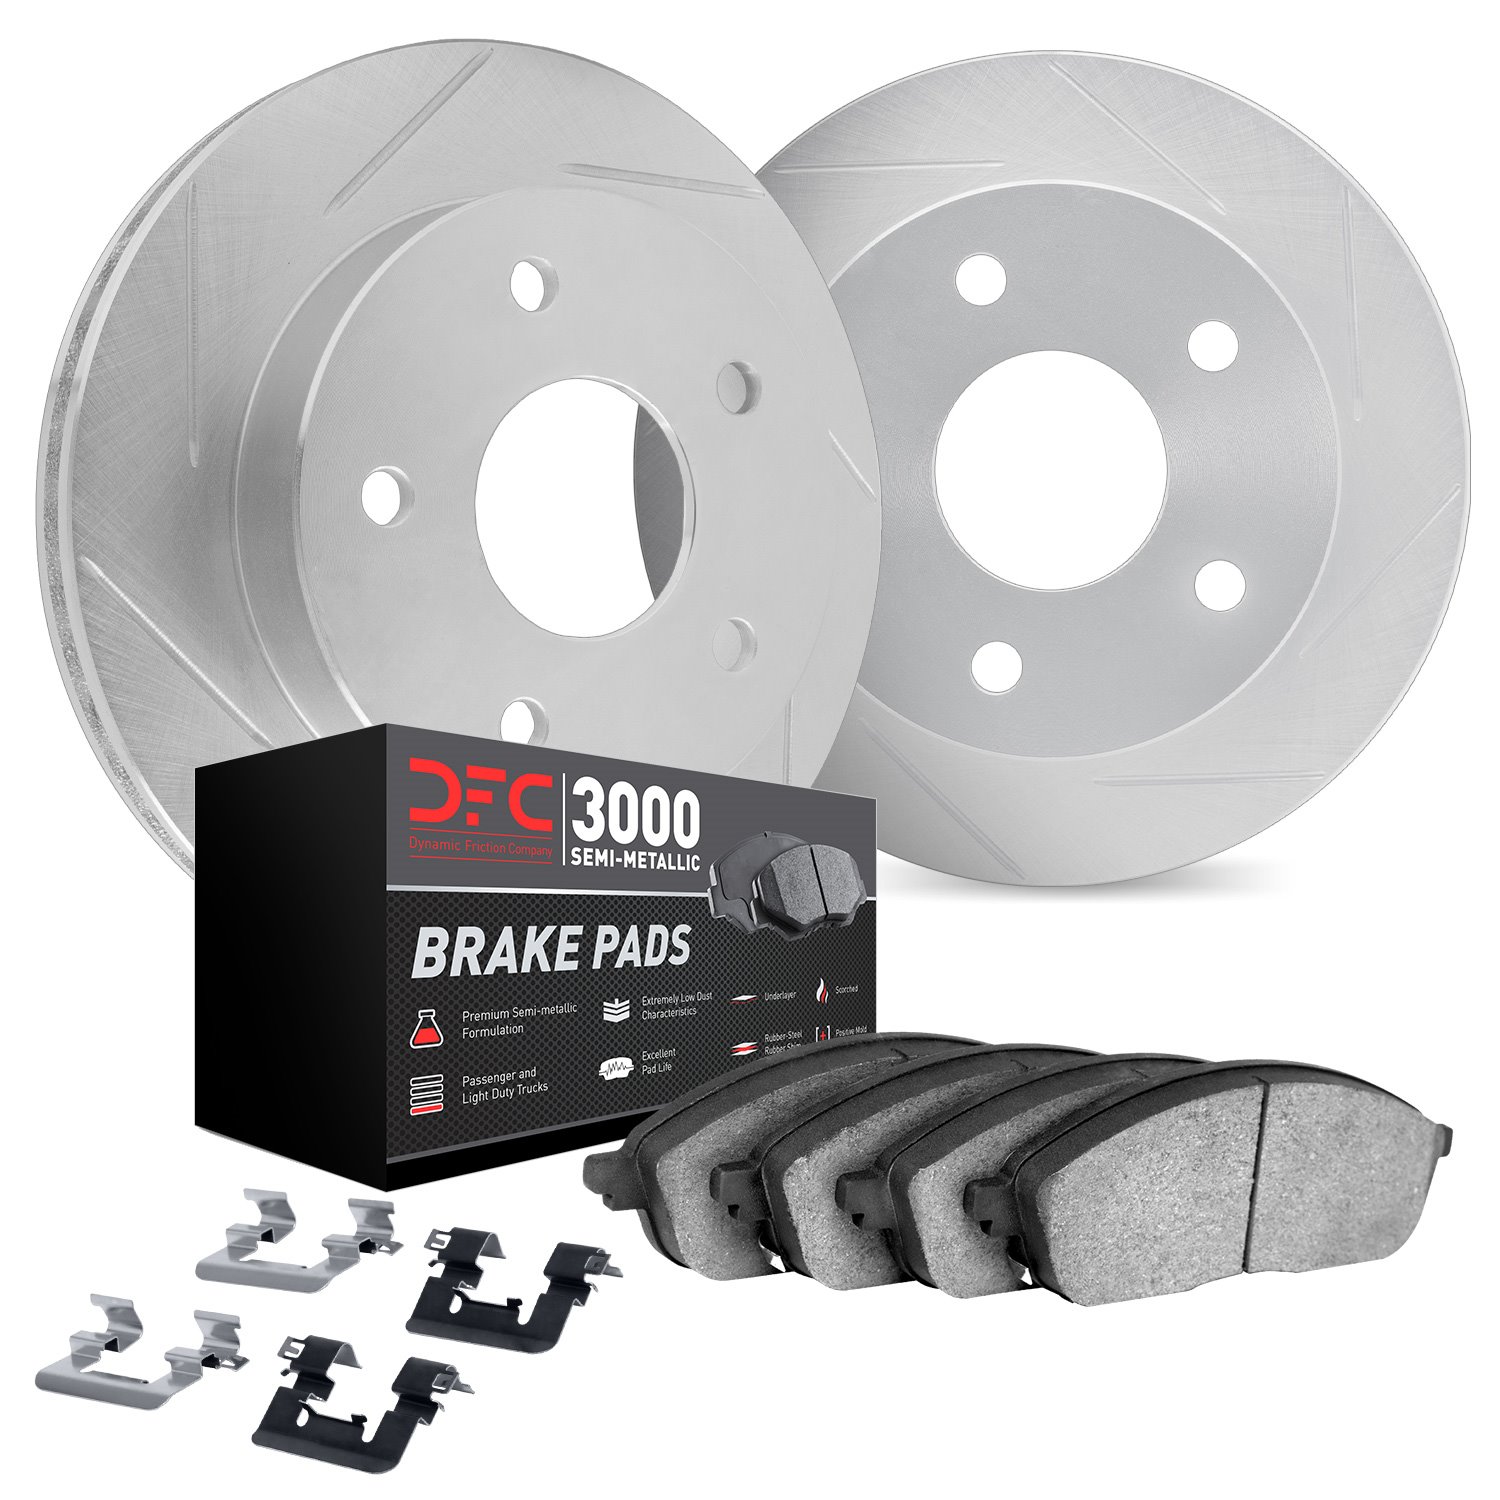 5112-63134 Slotted Brake Rotors with 3000-Series Semi-Metallic Brake Pads Kit & Hardware [Silver], 2013-2019 Mercedes-Benz, Posi